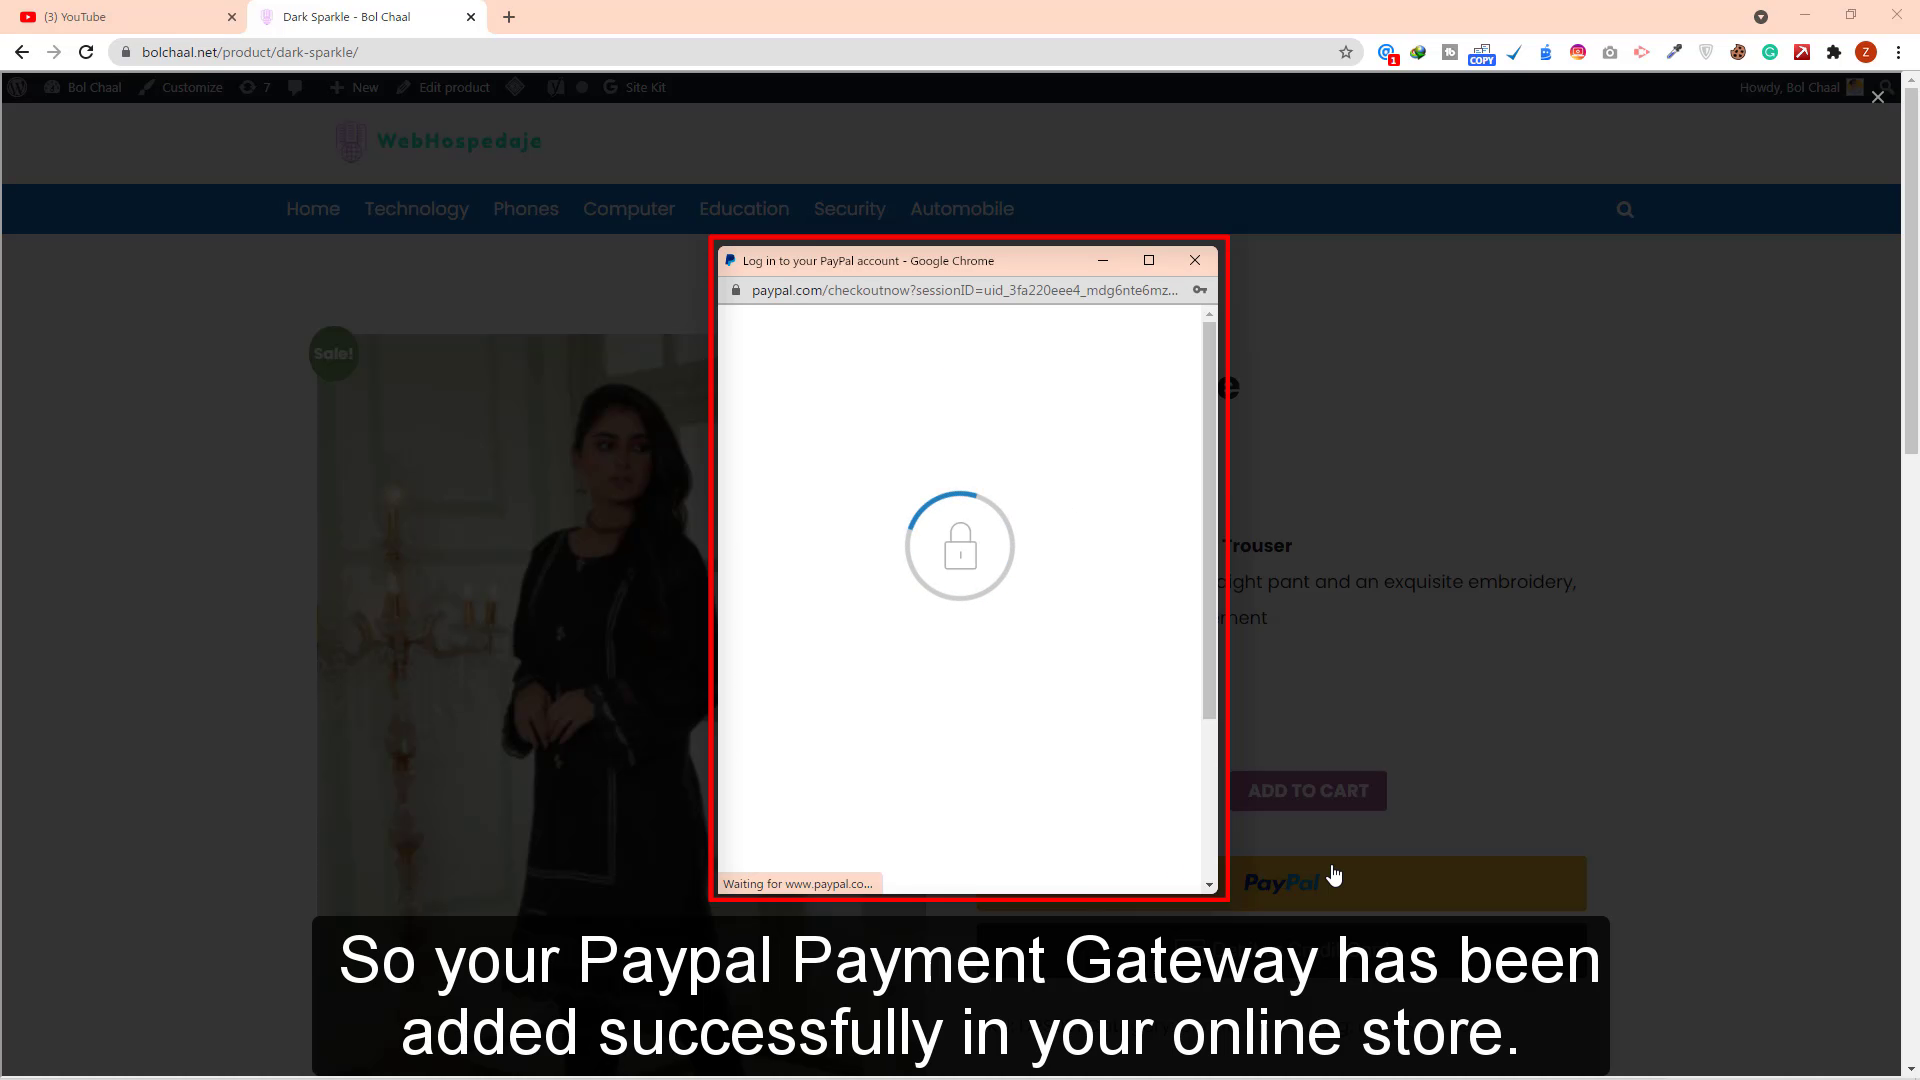 Así que su pasarela de pago de Paypal se ha agregado con éxito en su tienda en línea